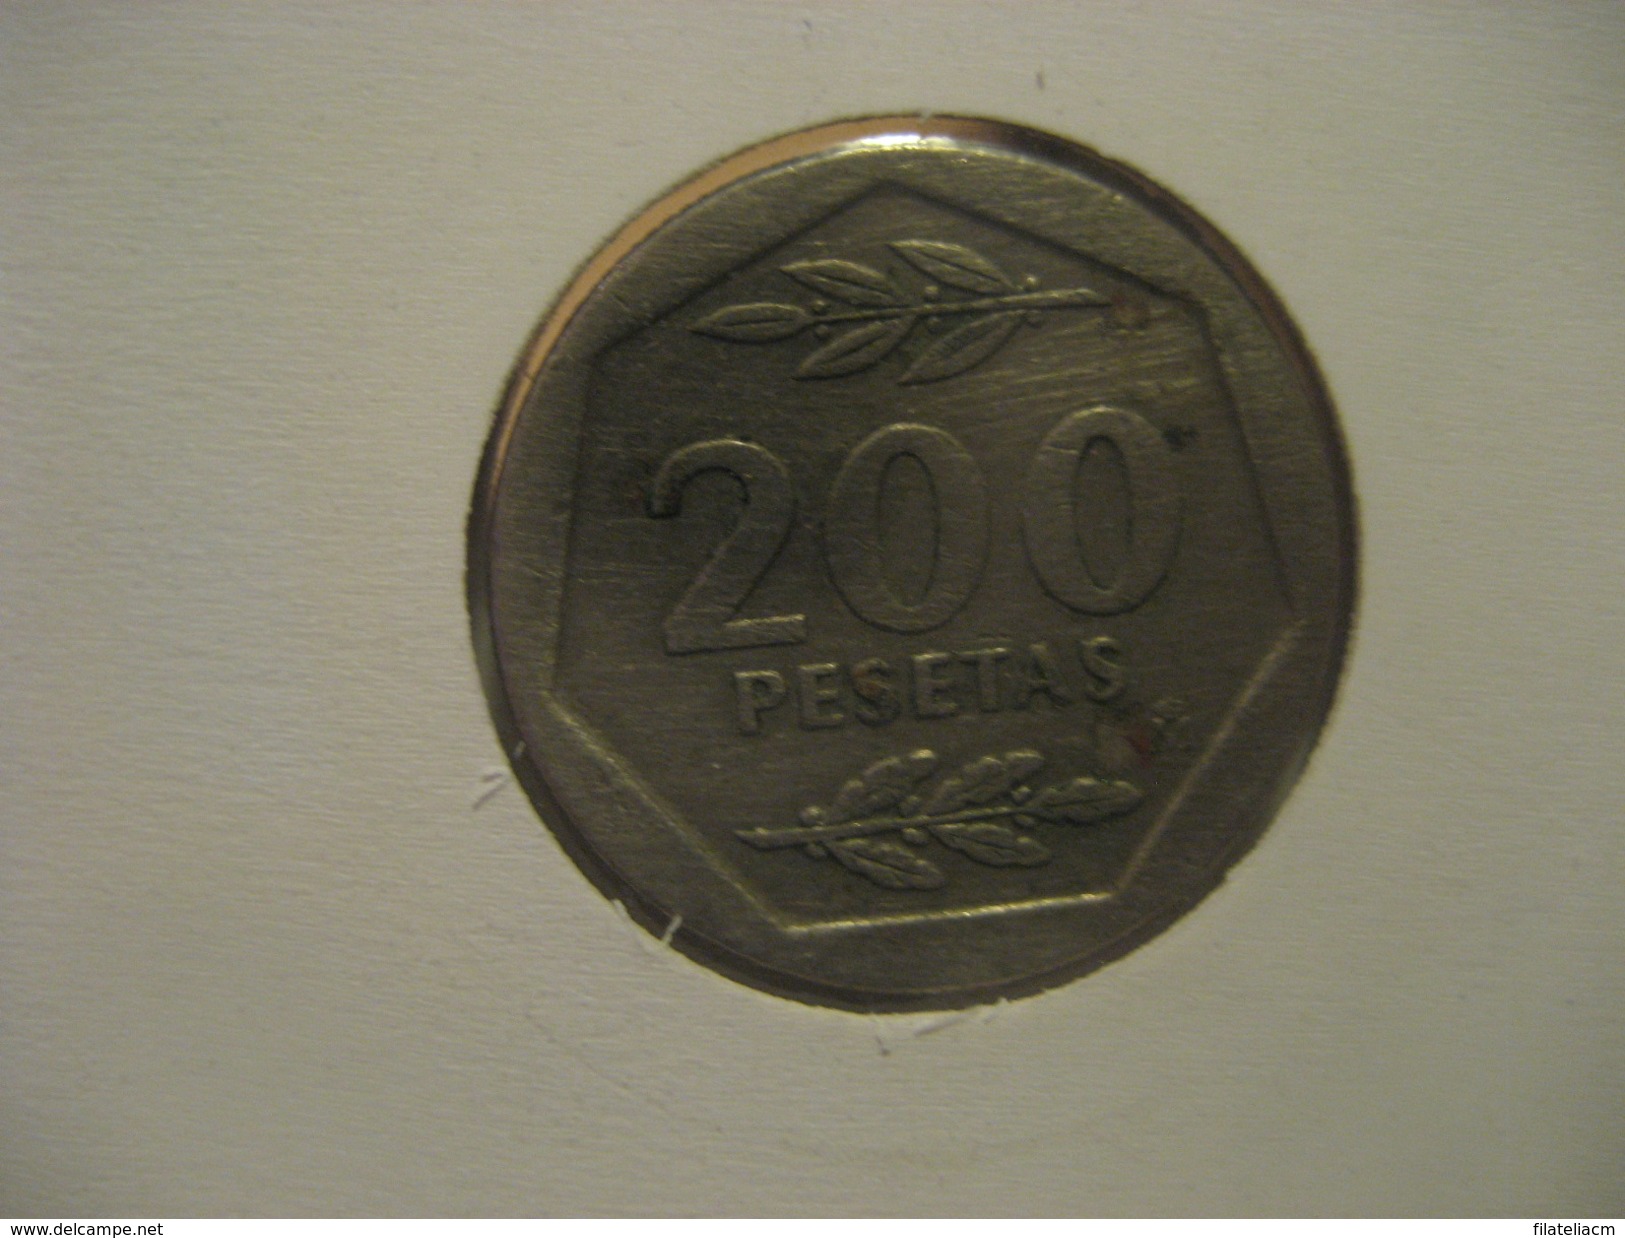 200 Pesetas 1986 SPAIN Juan Carlos I Coin - 200 Peseta